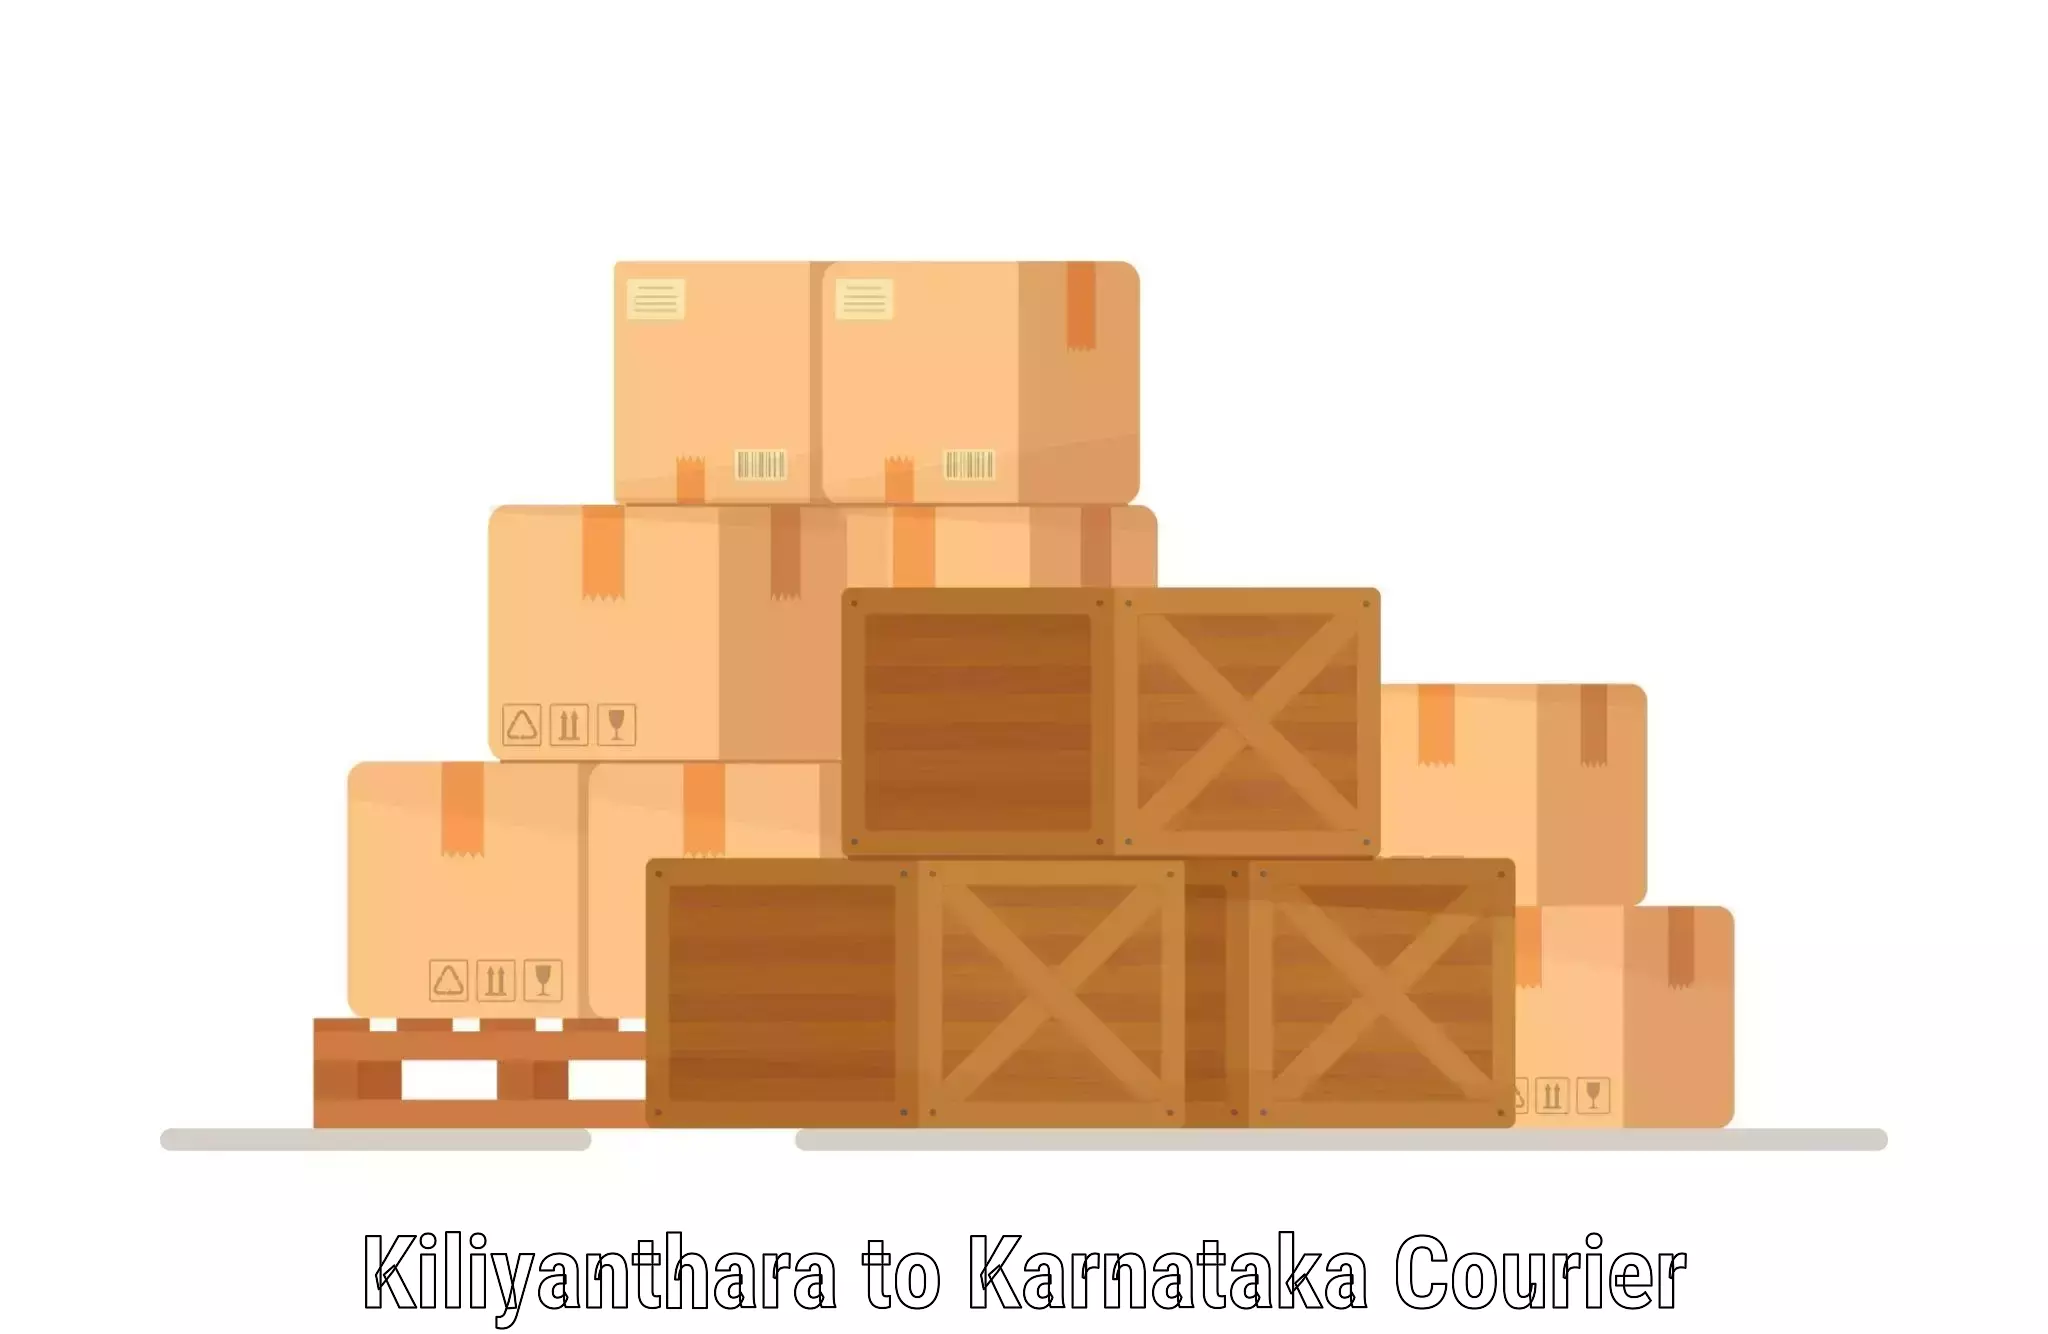 Subscription-based courier Kiliyanthara to Rajajinagar